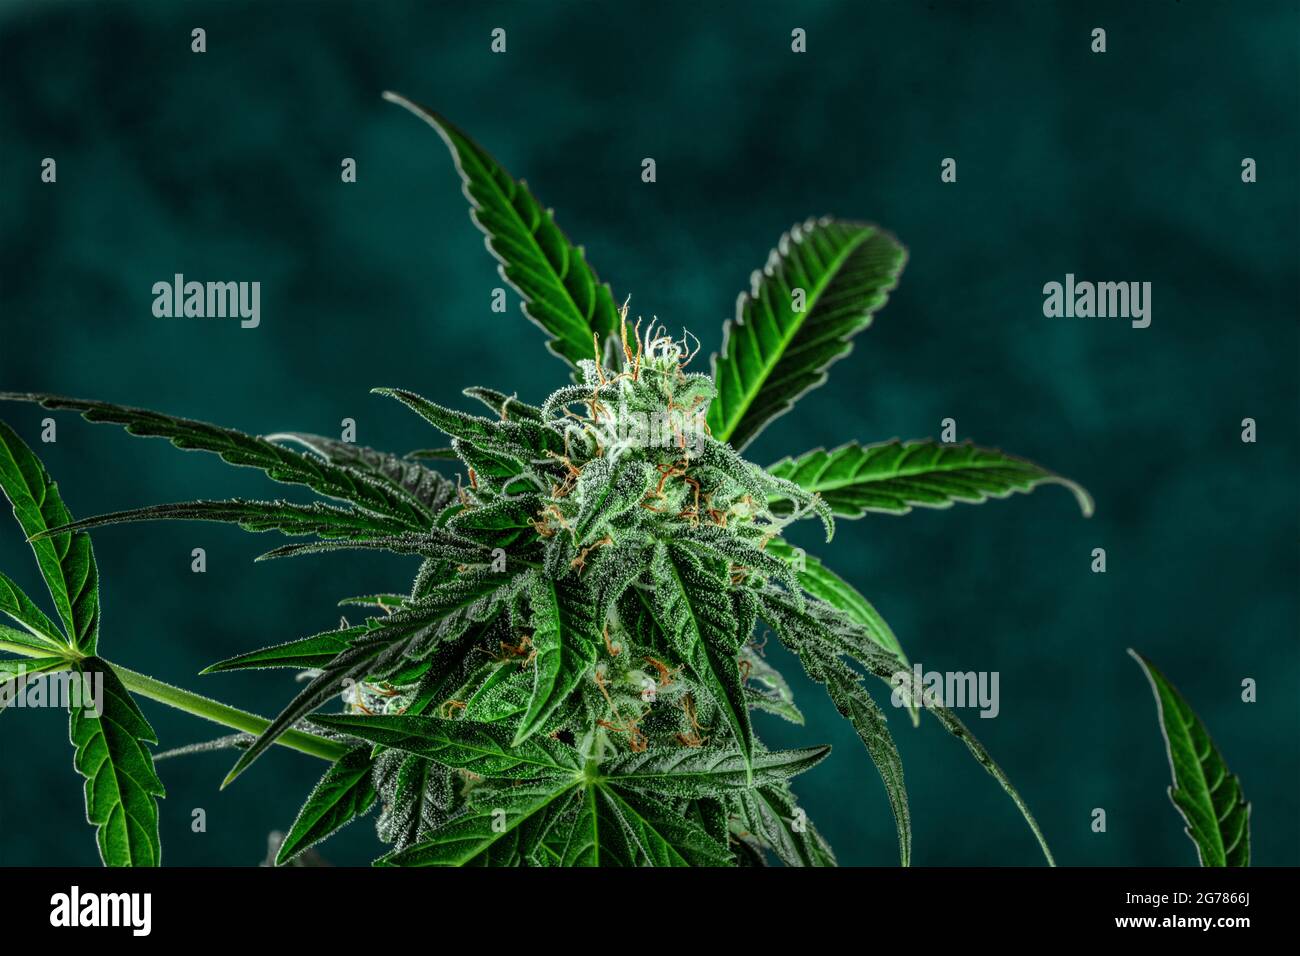 Planta de marihuana en flor, lista para la cosecha. Flores y hojas de cannabis. Cultivo de cannabis con fines médicos Foto de stock